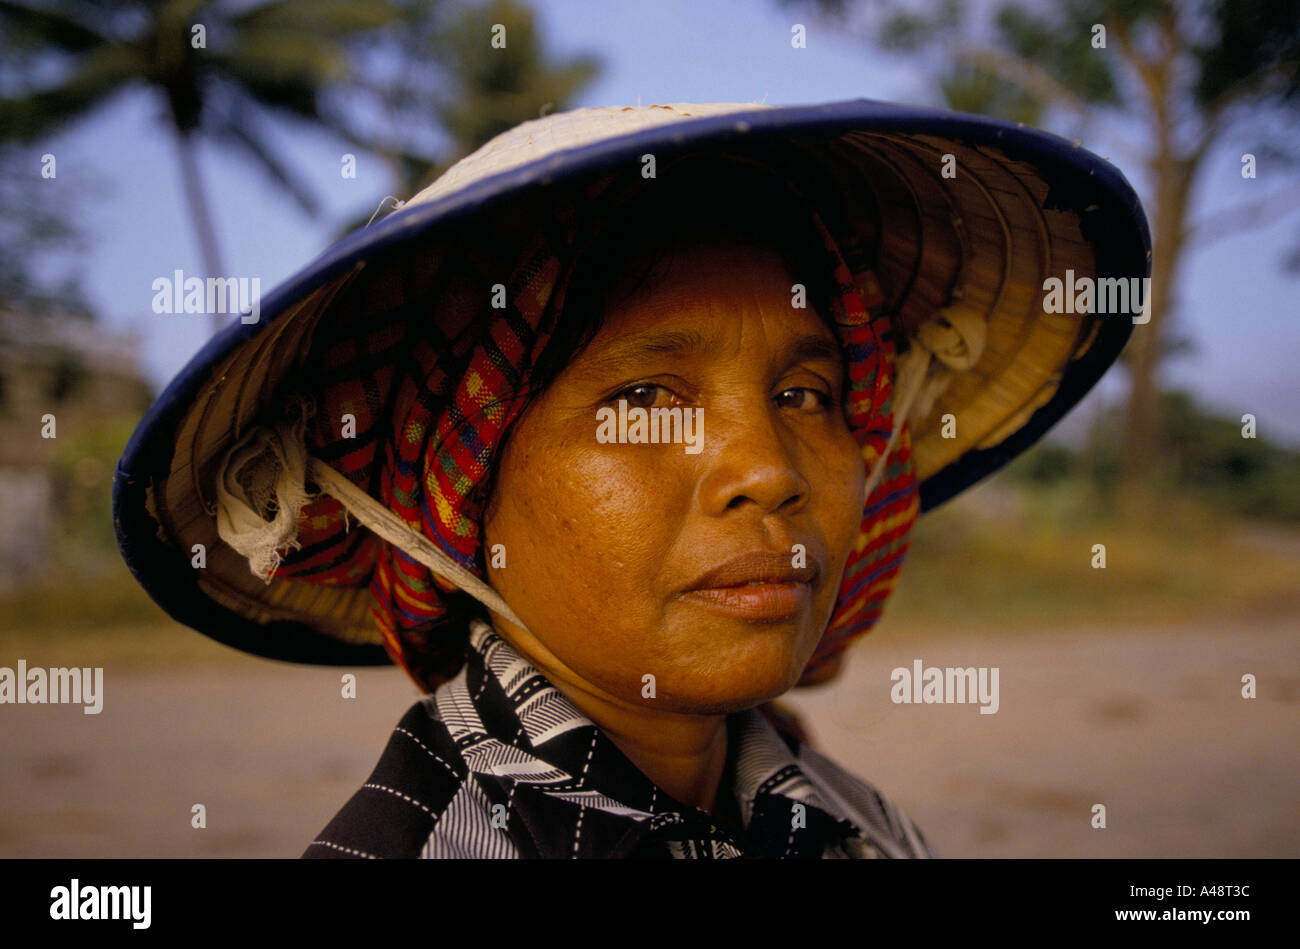 A muslim Cambodian woman or Chun peasant. Stock Photo